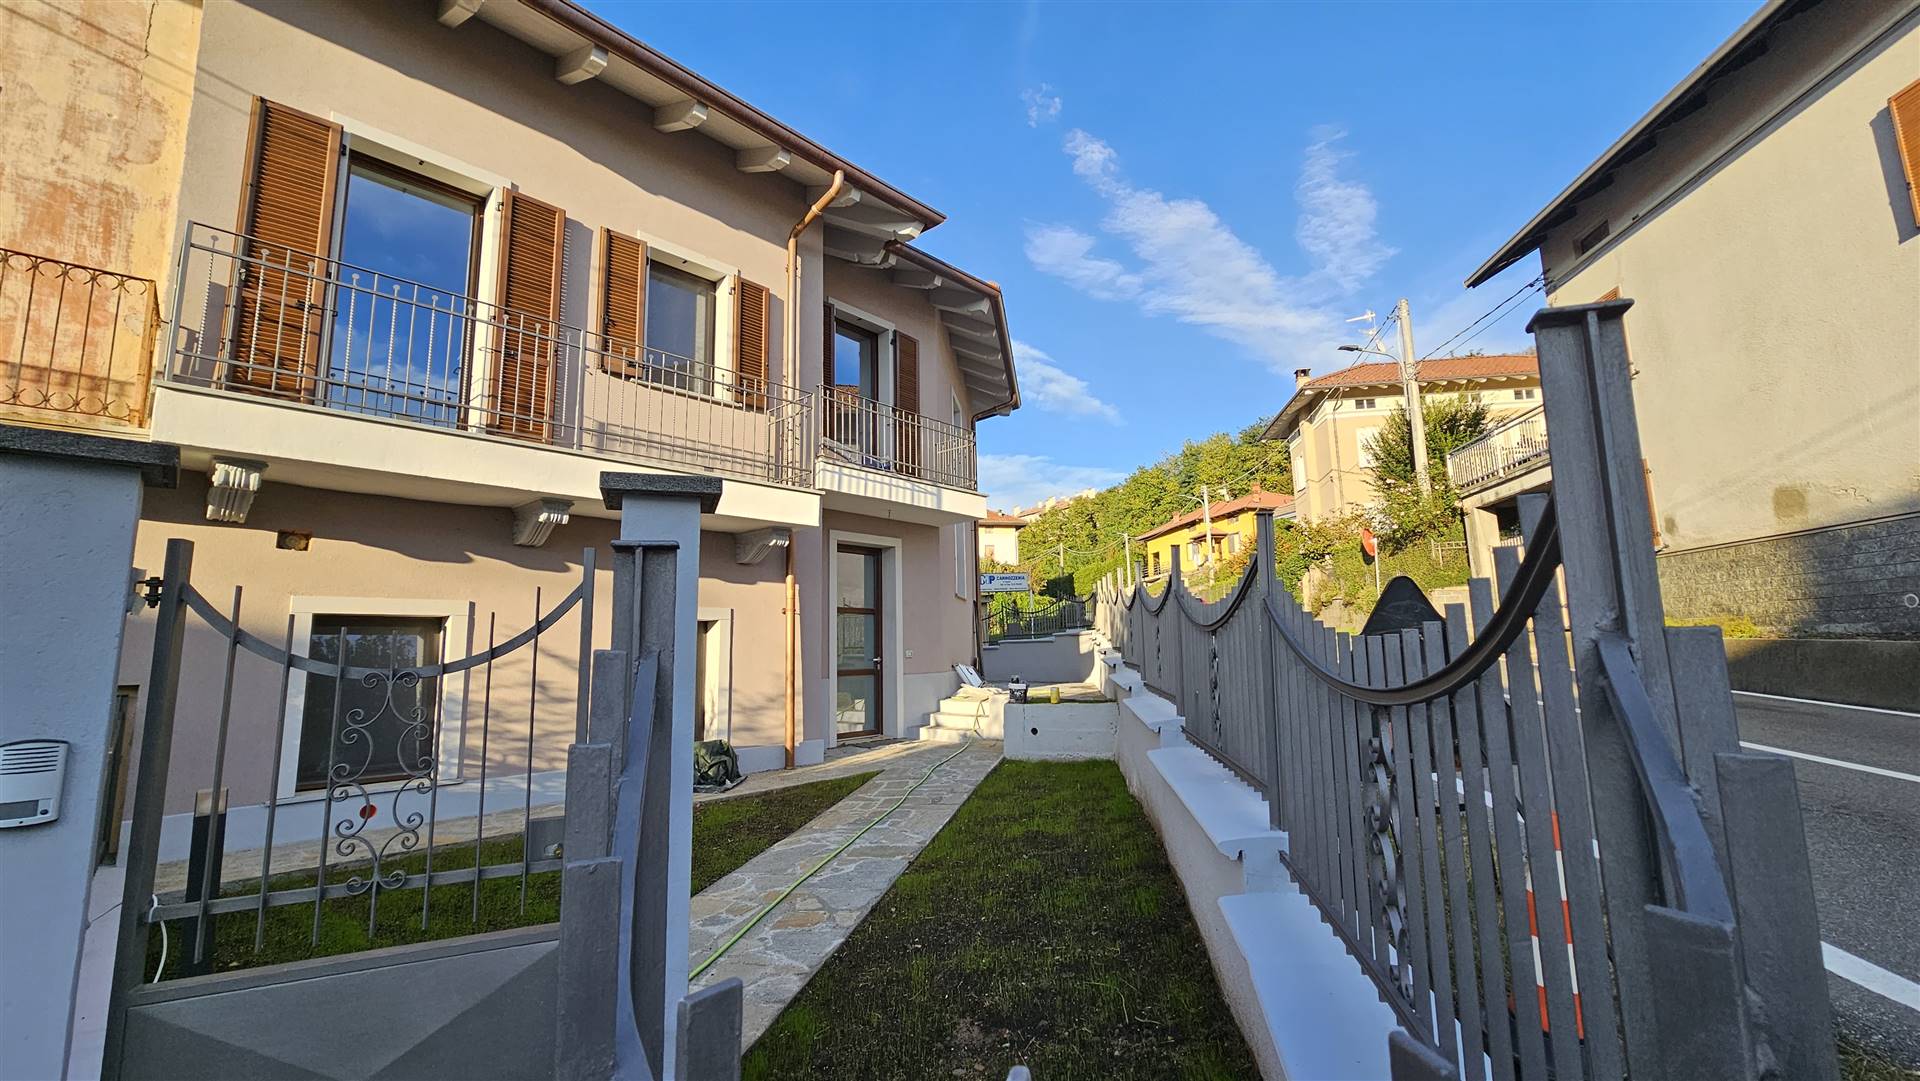 Villa in vendita a Cossato, 8 locali, prezzo € 198.000 | PortaleAgenzieImmobiliari.it